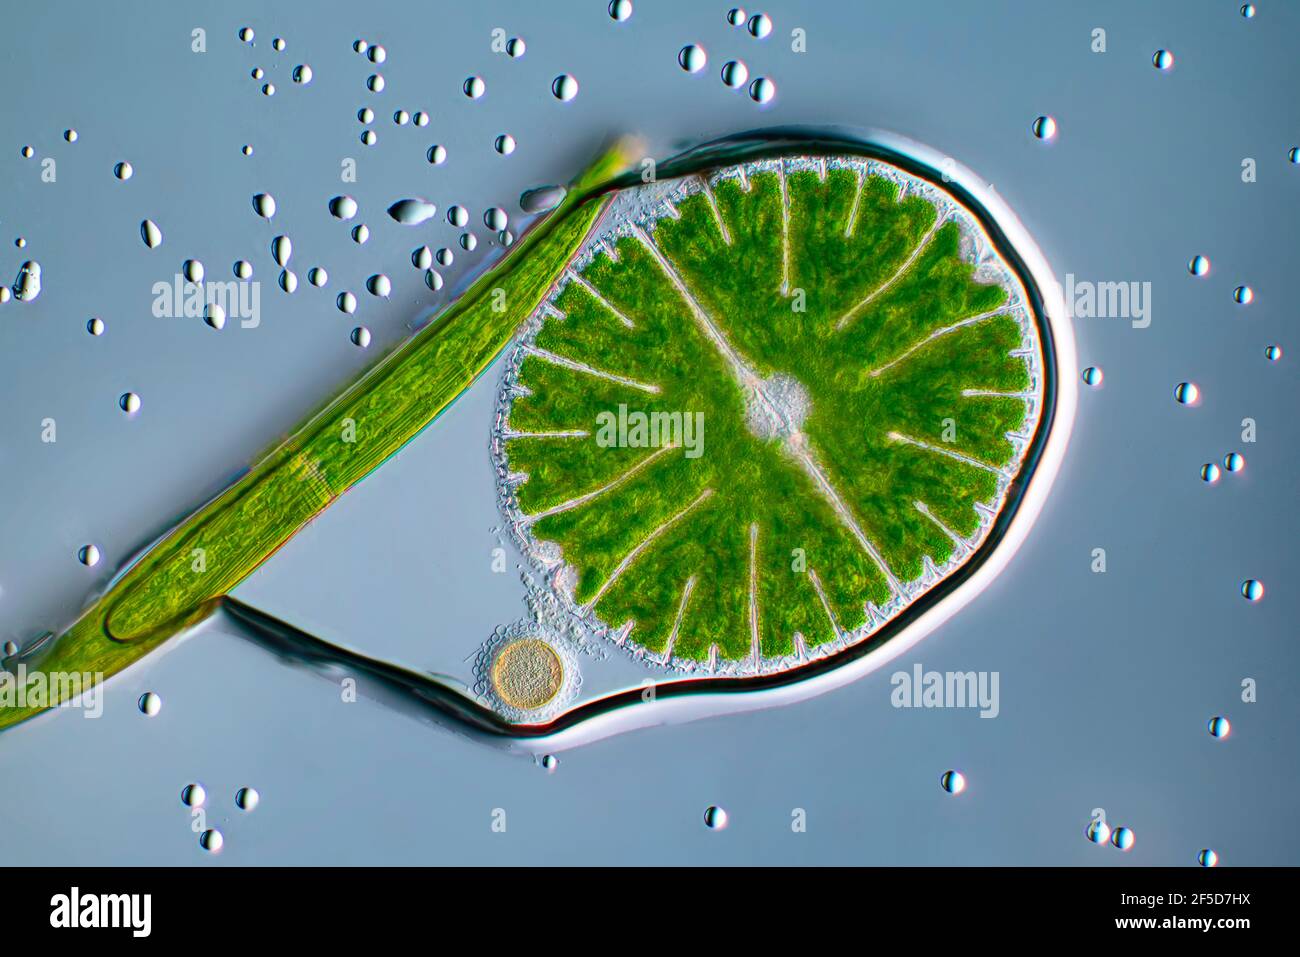 Grünalge (Micrasterias rotata), mit Clostridium in einer Wasserblase, Bild mit differenziellem Interferenzkontrast, Vergrößerung x100 bezogen auf 35 mm, Stockfoto